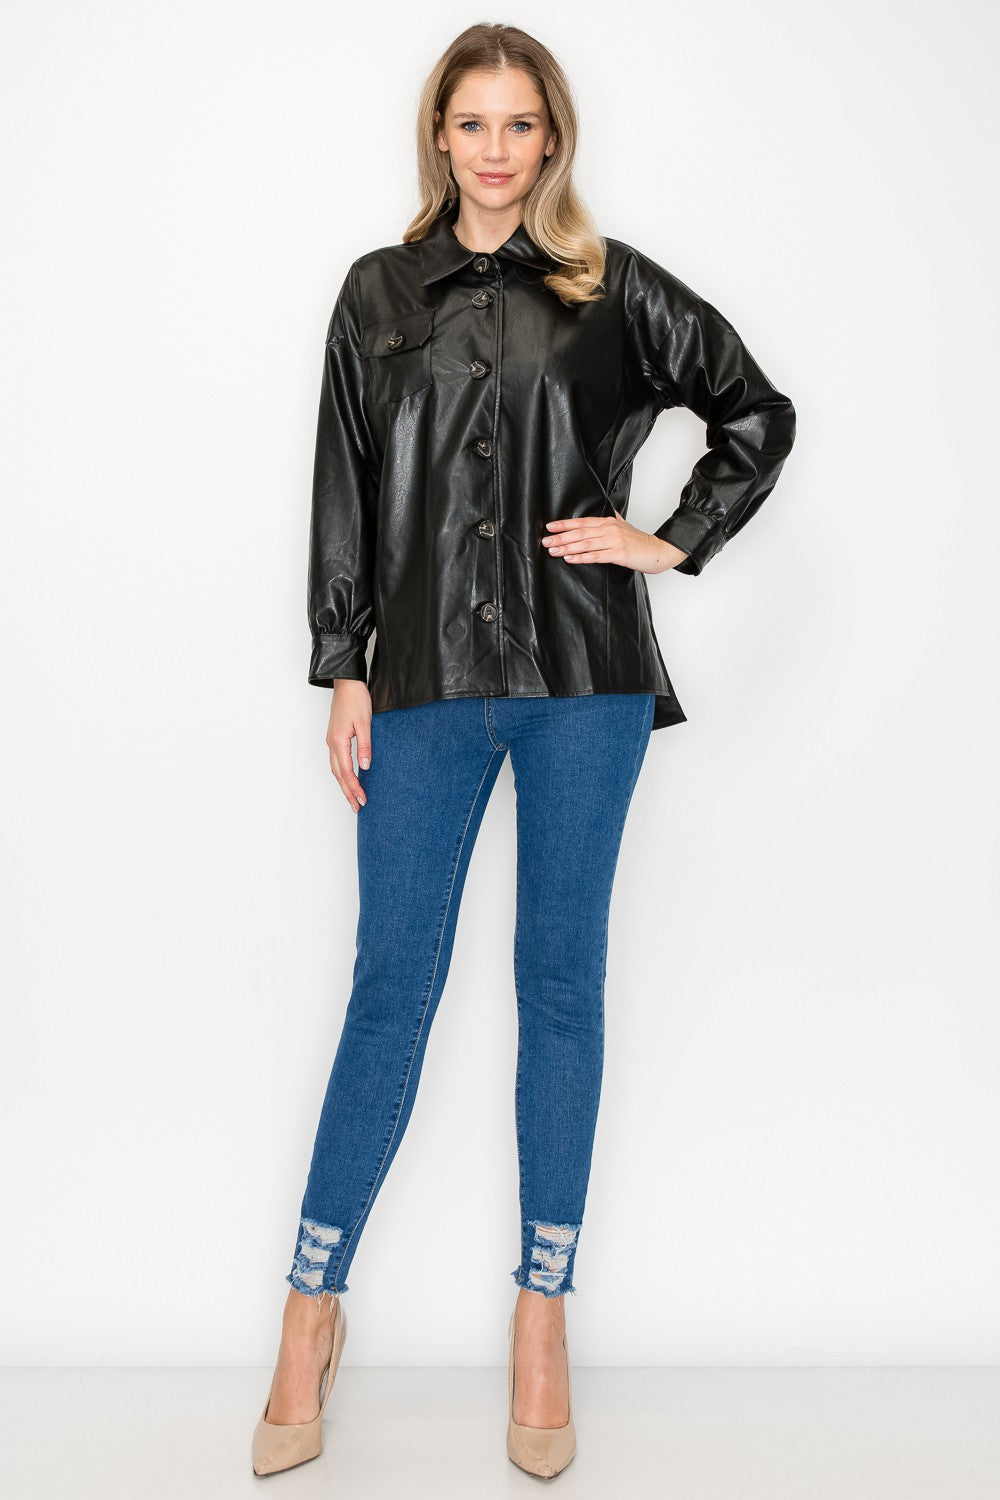 Jiana Leather Jacket